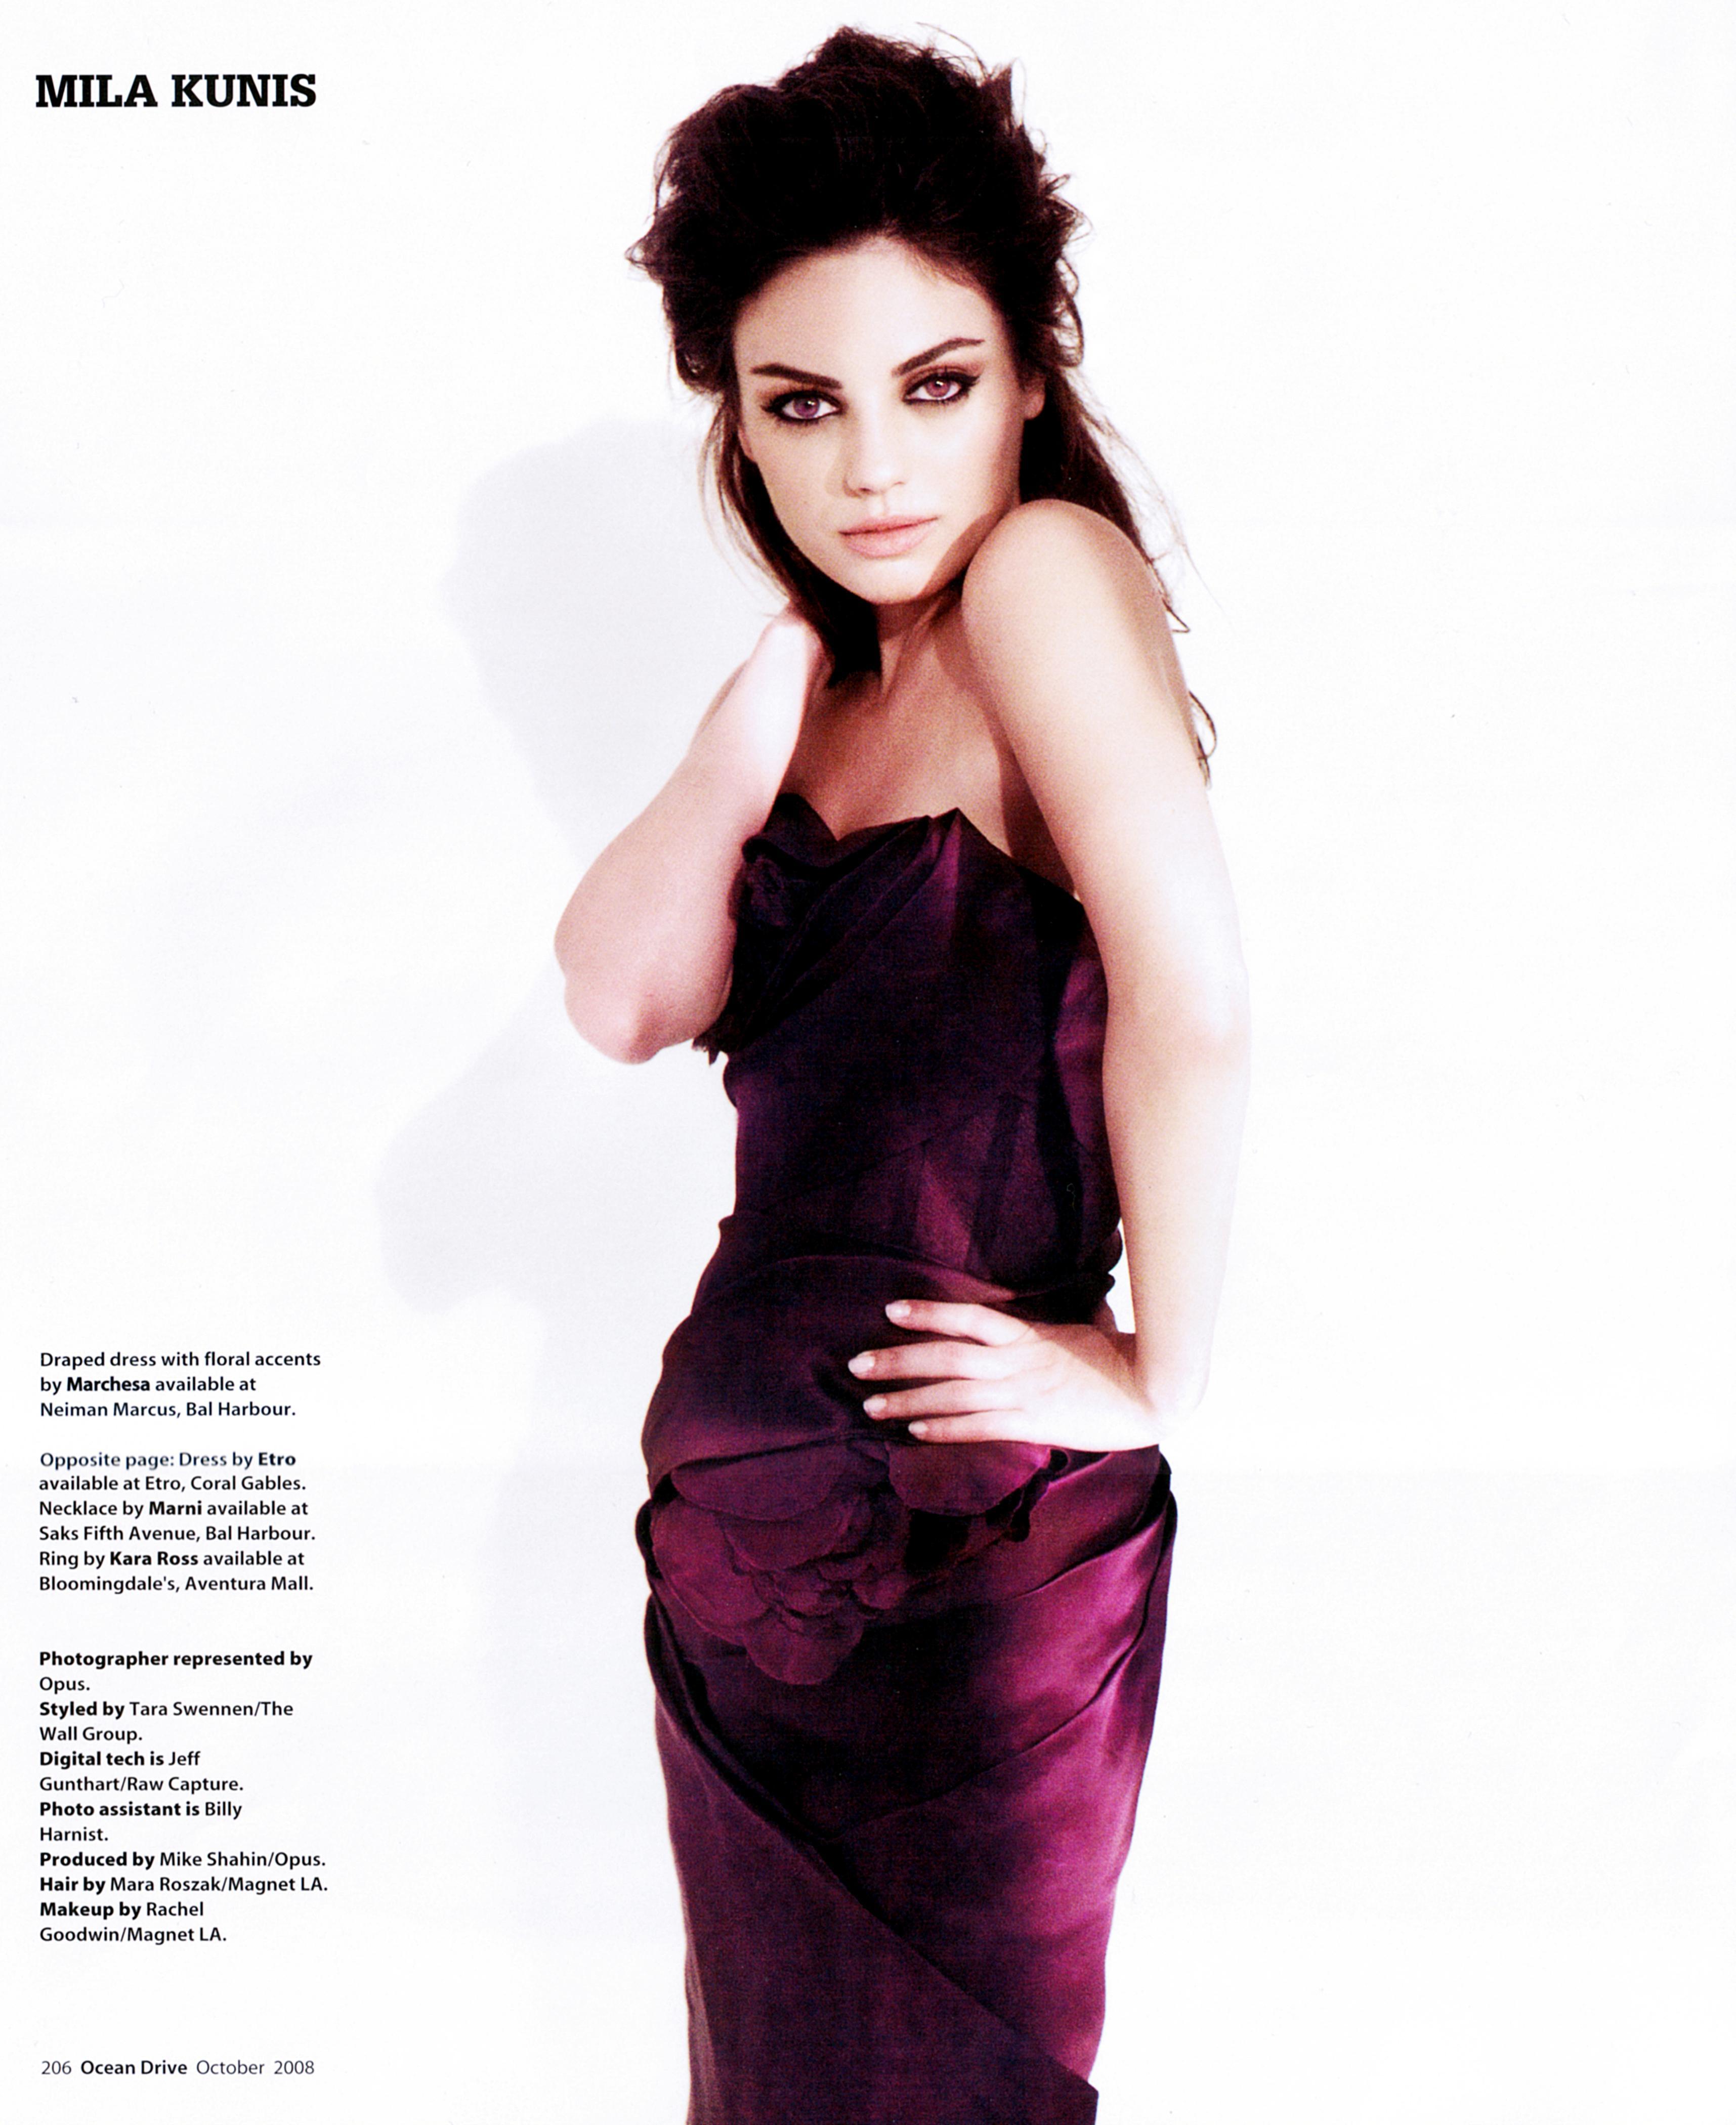 women, Mila Kunis, actress, celebrity - desktop wallpaper